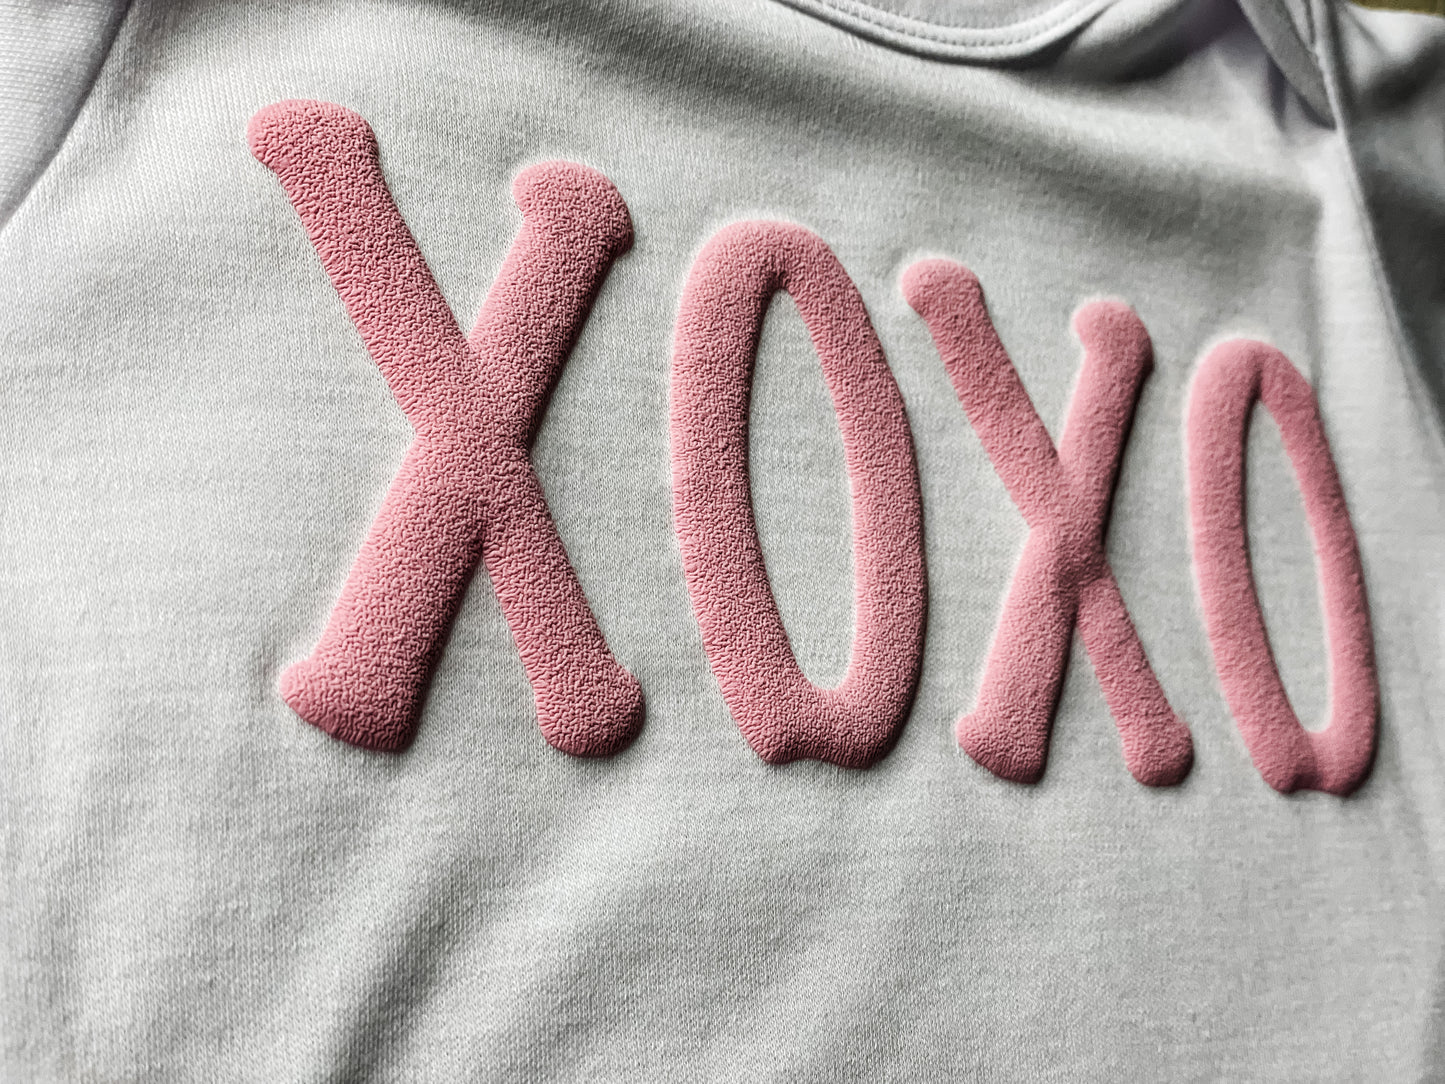 XOXO Tees and Sweatshirts